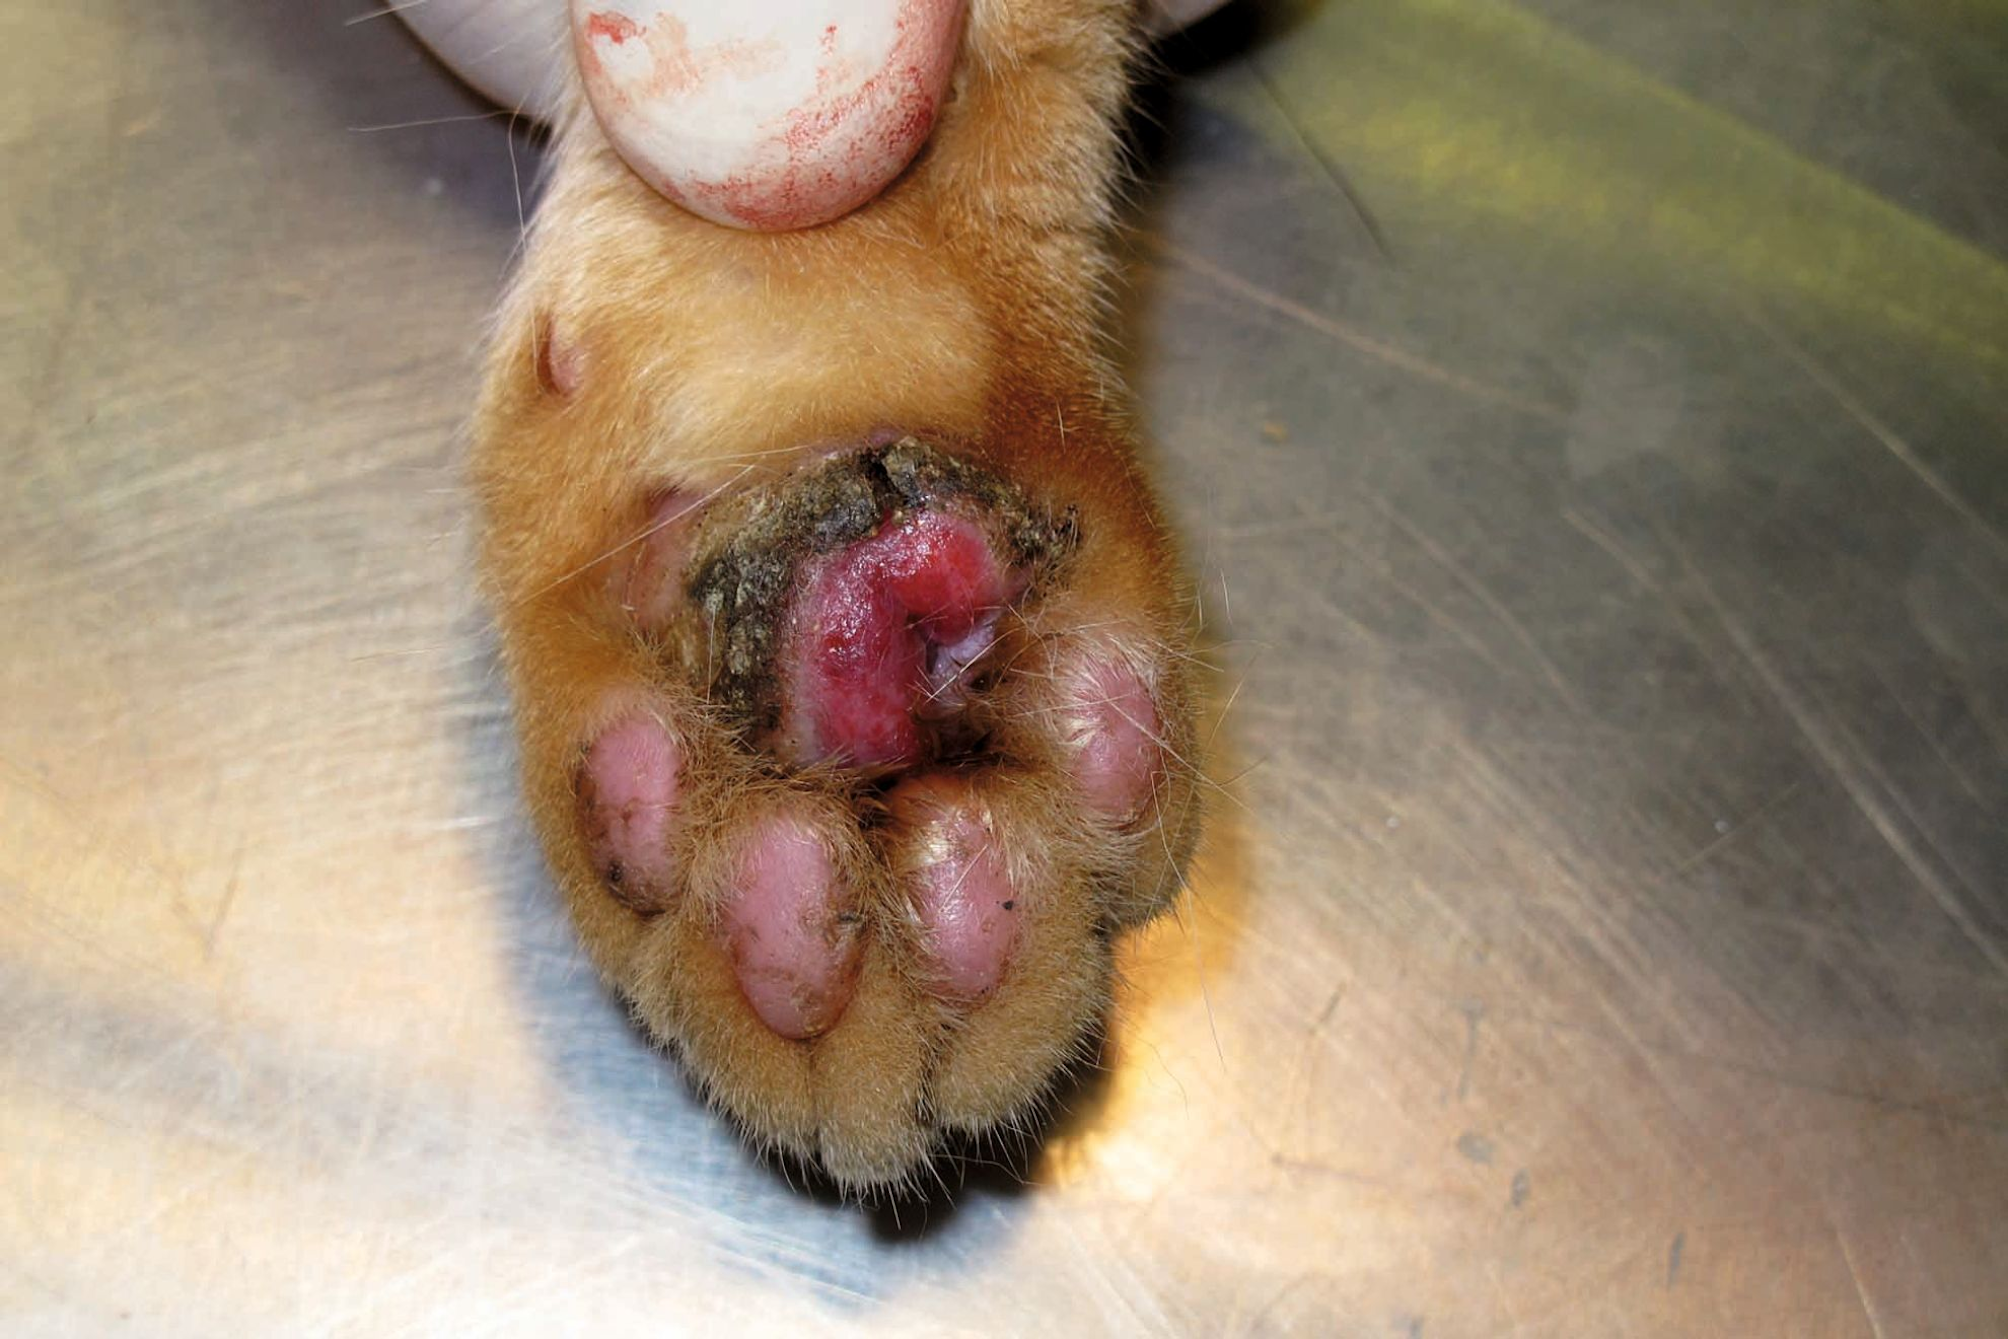  호산구성 육아종(EG)이 있는 고양이의 육구에 생긴 궤양성 가피